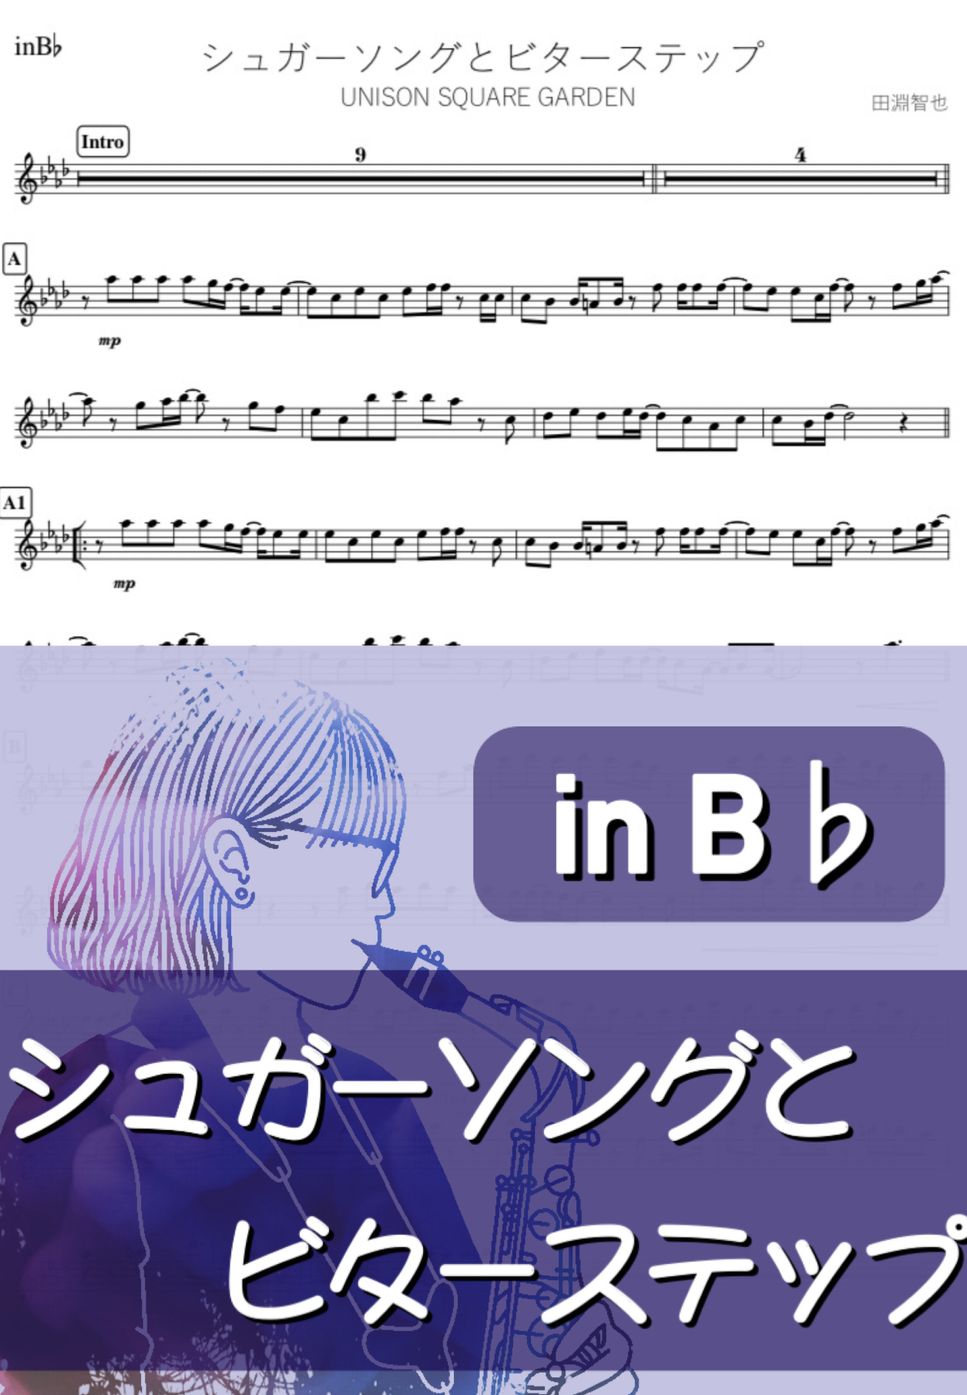 血界戦線 - シュガーソングとビターステップ (B♭) by kanamusic